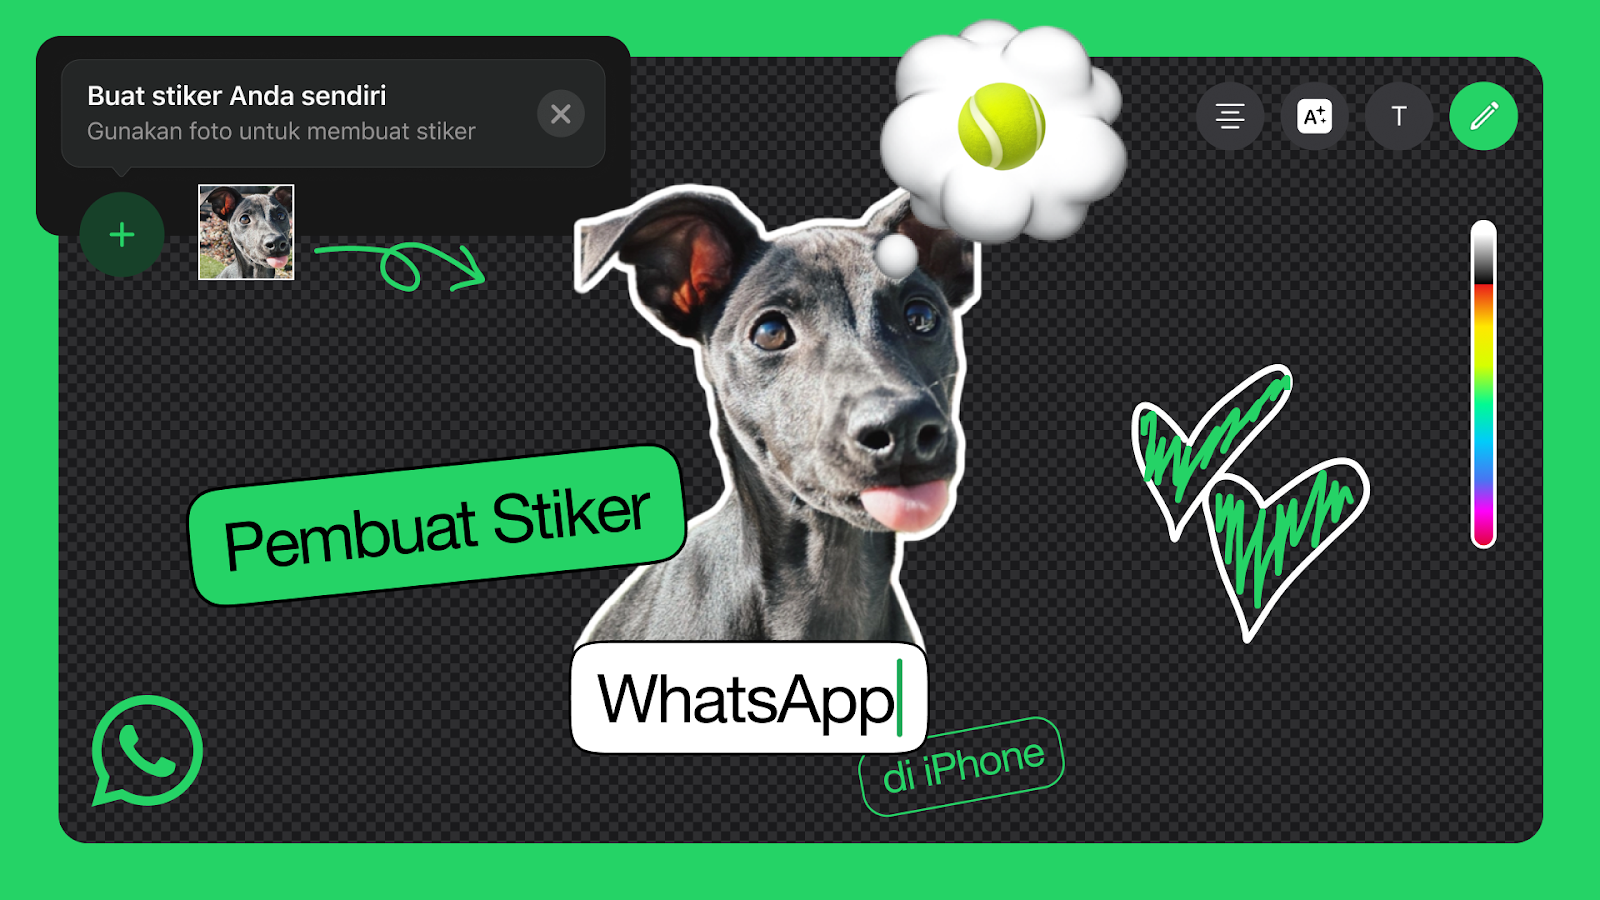 Pengguna iPhone Bisa Buat Stiker Sendiri di WhatsApp